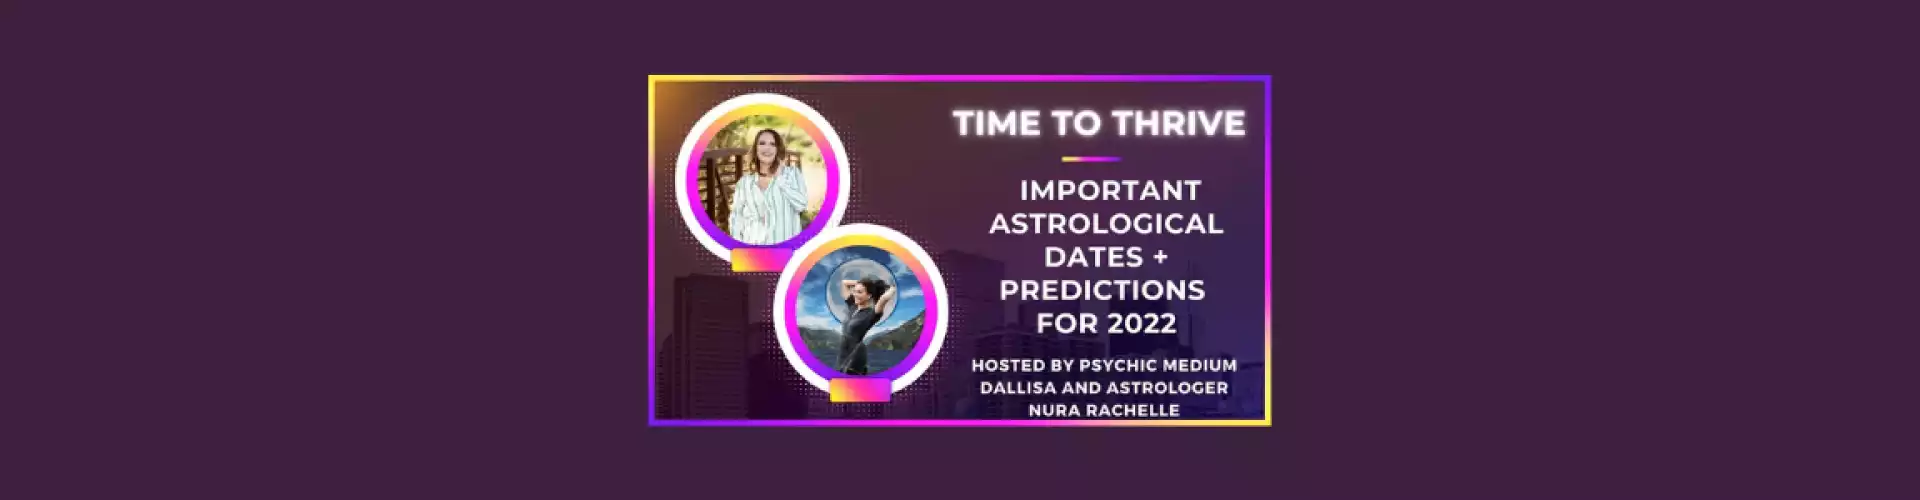 Hora de prosperar: fechas y predicciones astrológicas importantes para 2022